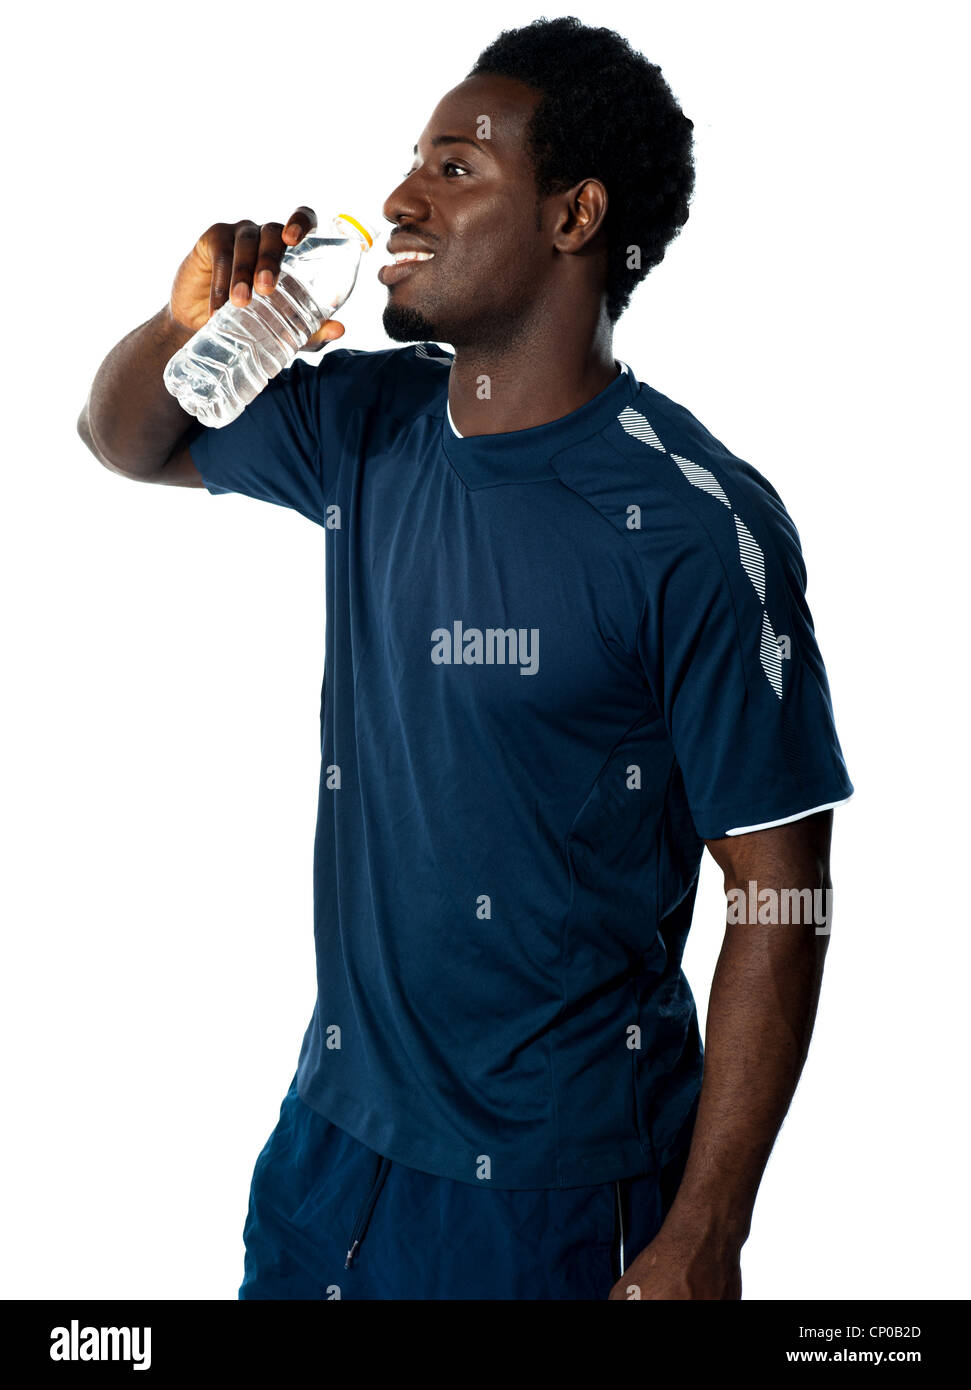 Stanco atleta africana acqua potabile contro uno sfondo bianco Foto Stock